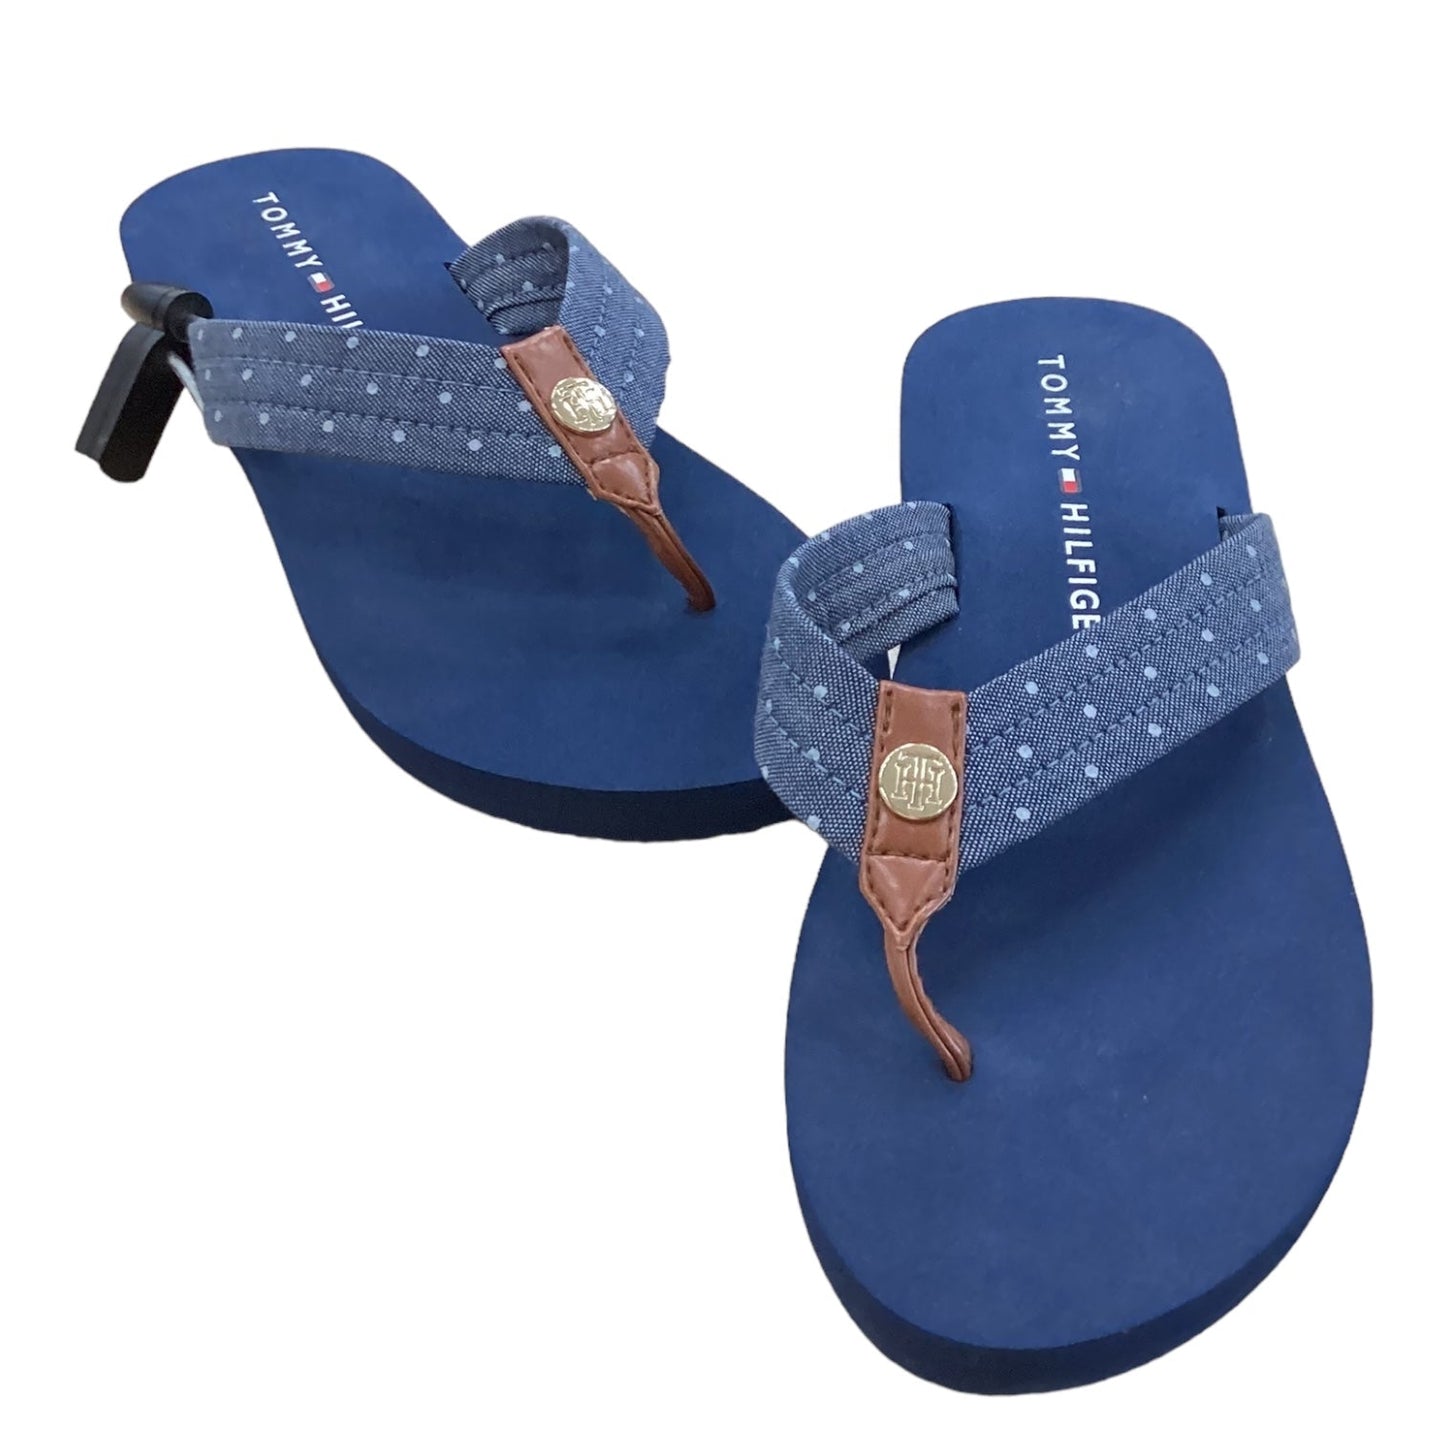 Blue Sandals Flip Flops Tommy Hilfiger, Size 8